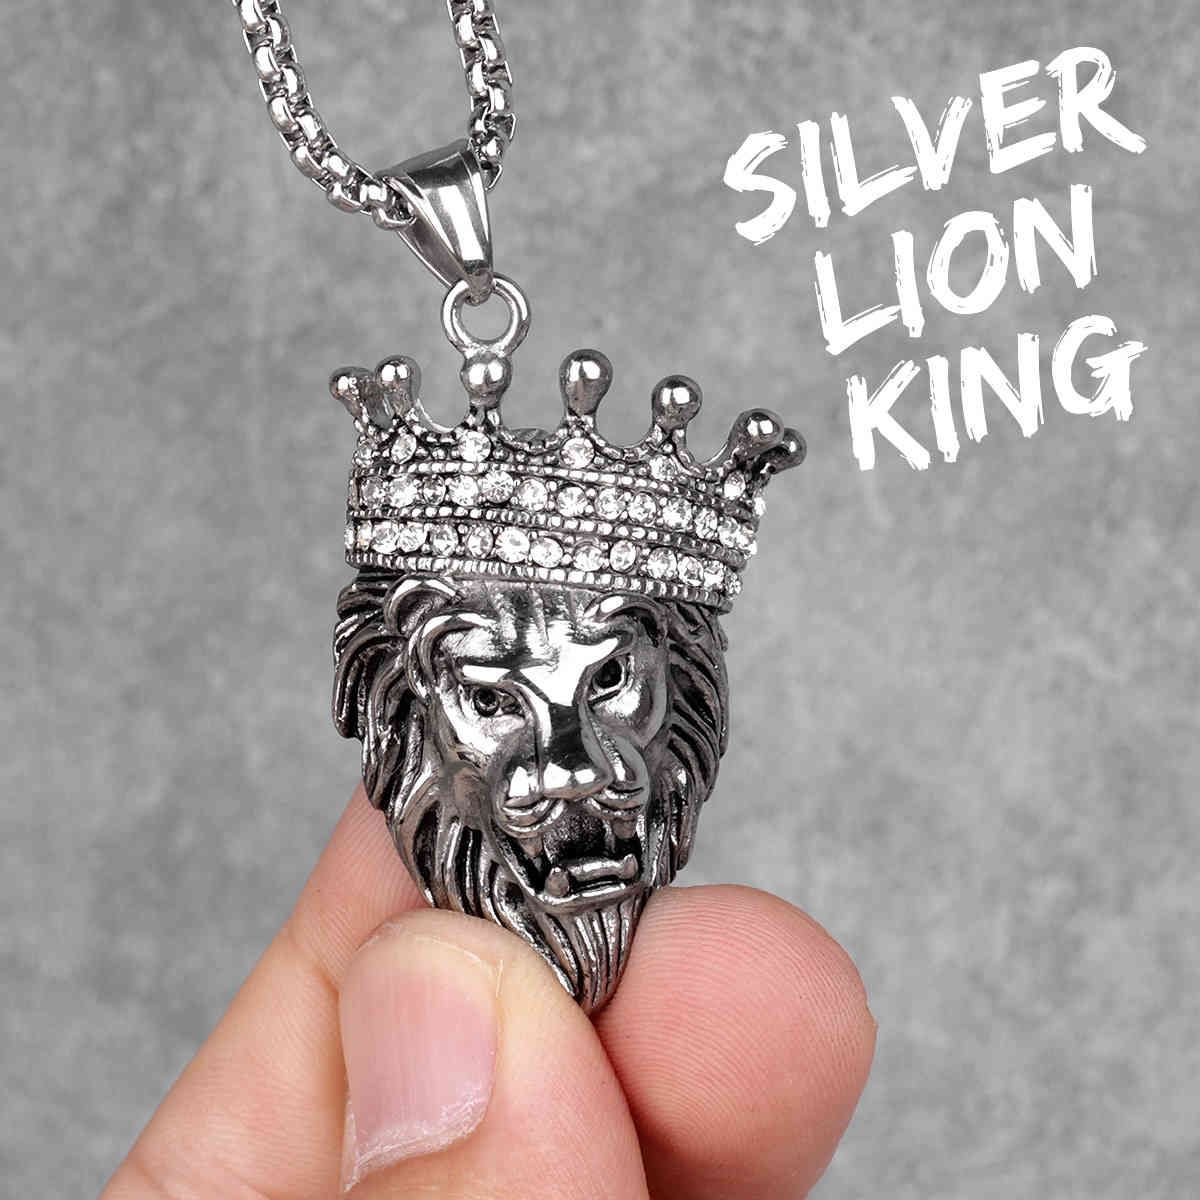 N344-Silver Lionking-sans chaîne